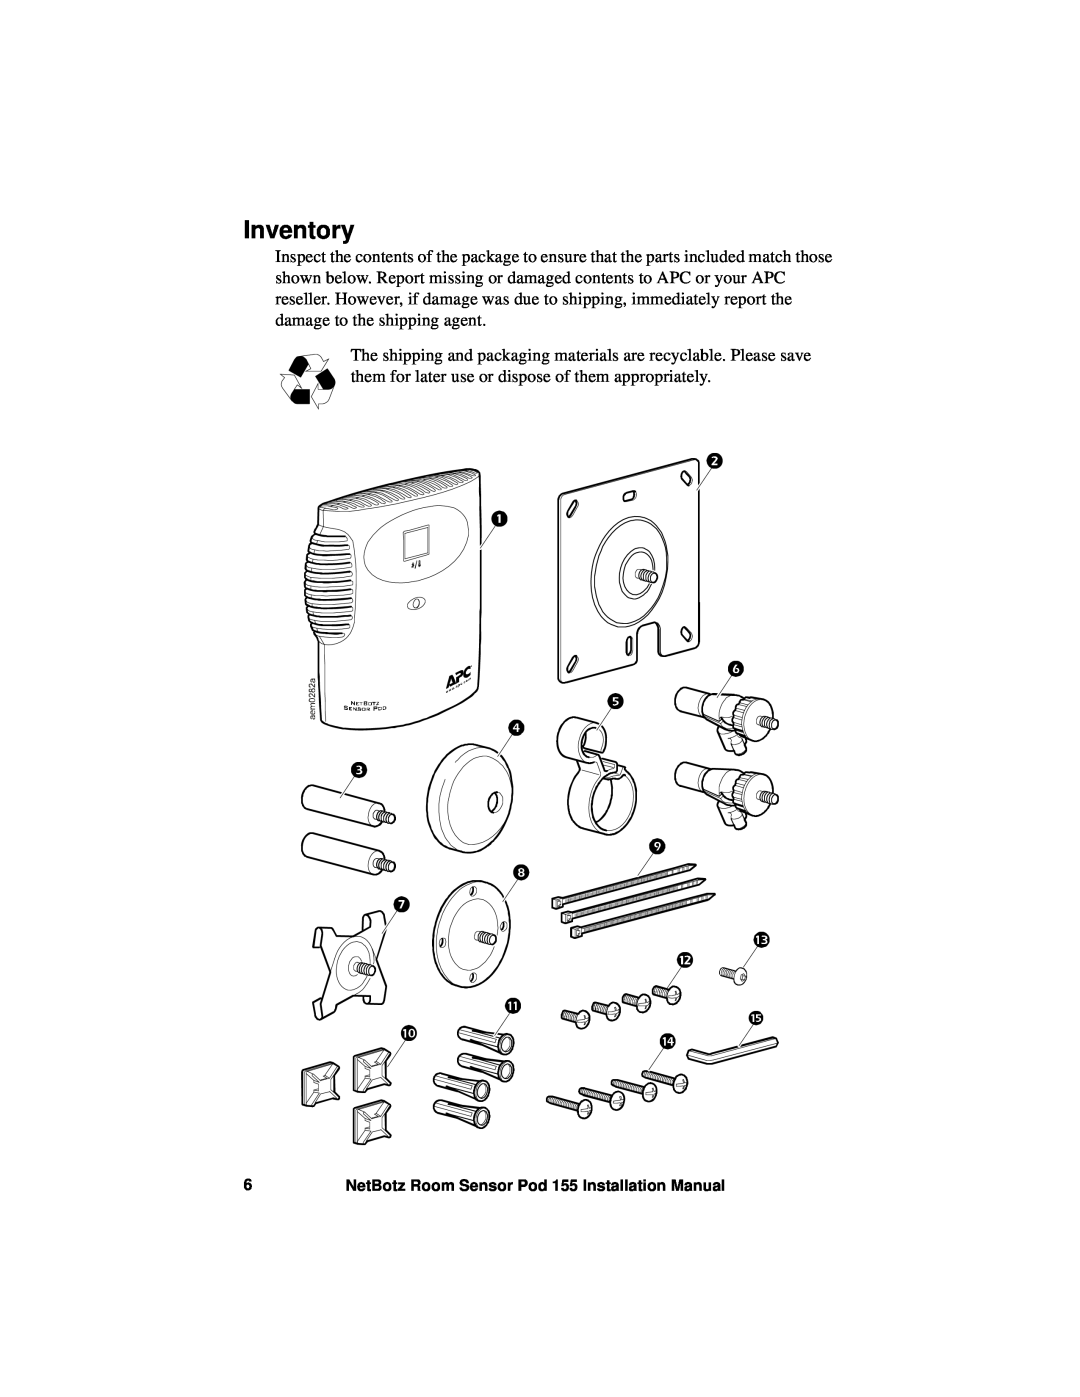 APC NBPD0155 installation manual Inventory, NetBotz Room Sensor Pod 155 Installation Manual 